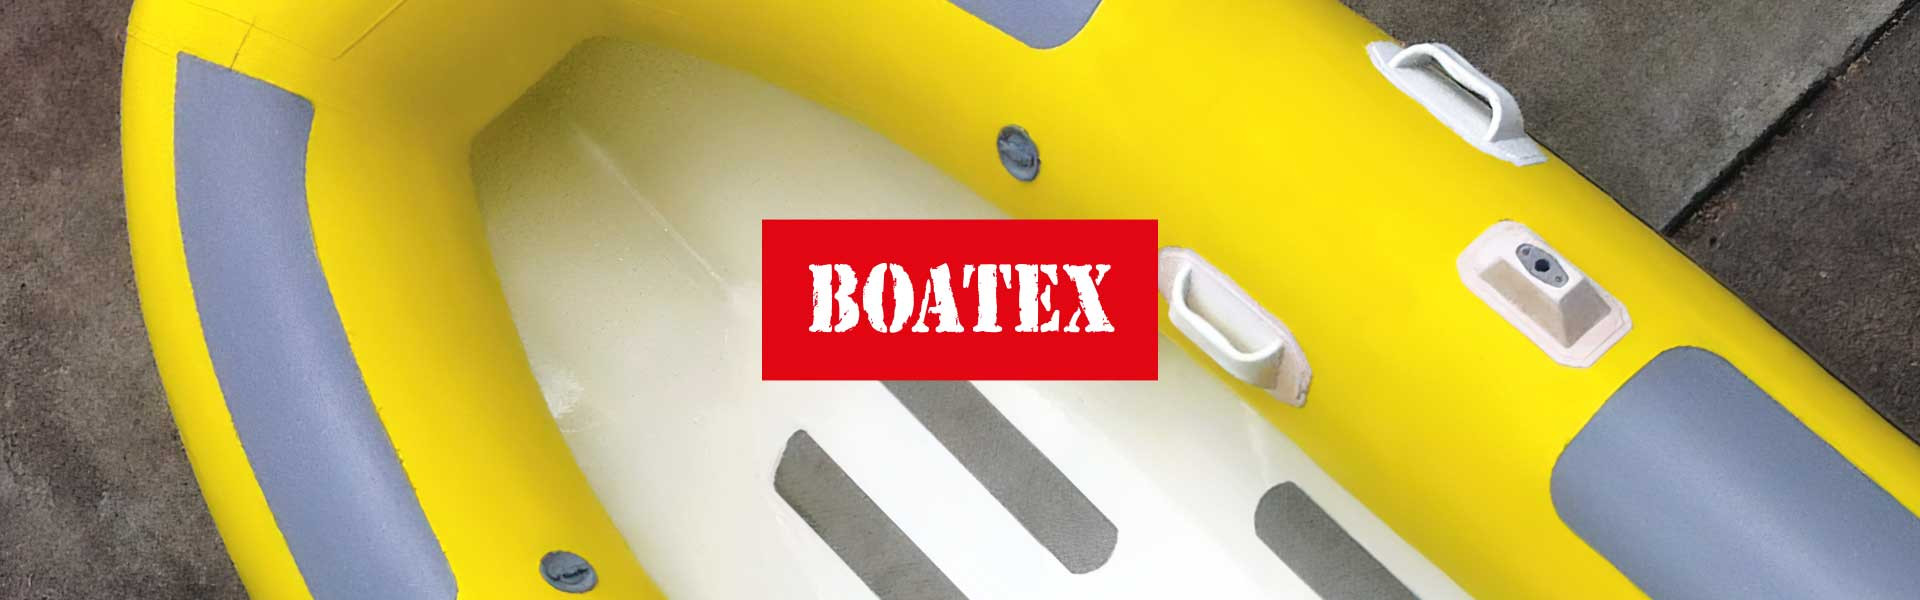 BOATEX 1100 г/м.кв жовтого кольору – 7,12 $ за м.кв